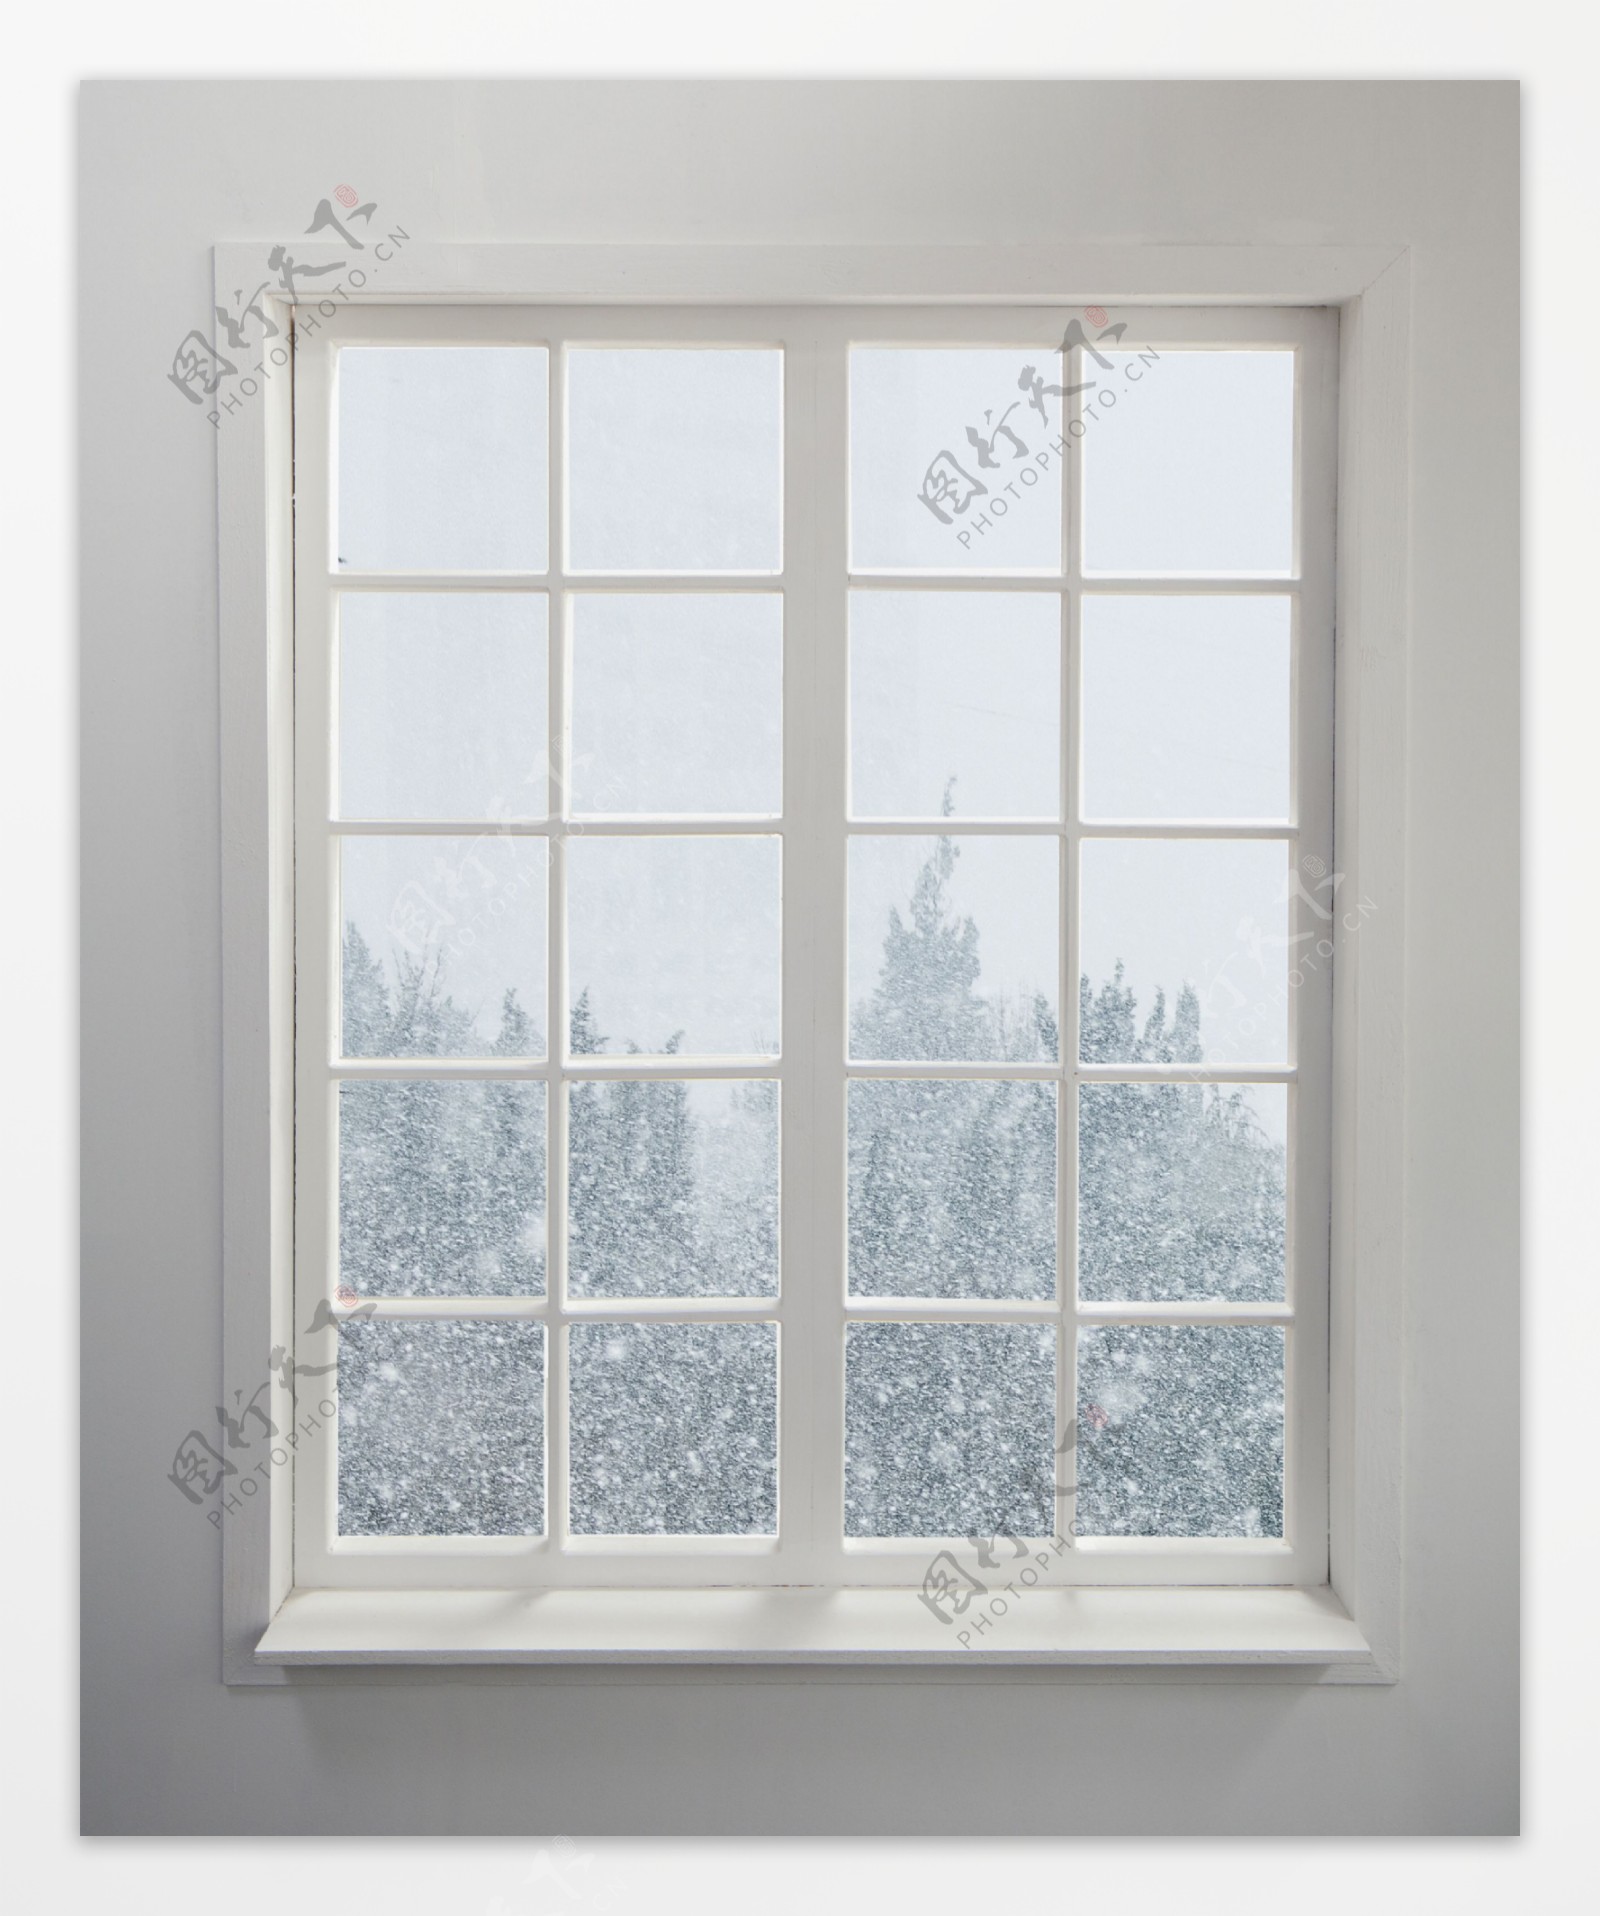 窗户外的雪景图片